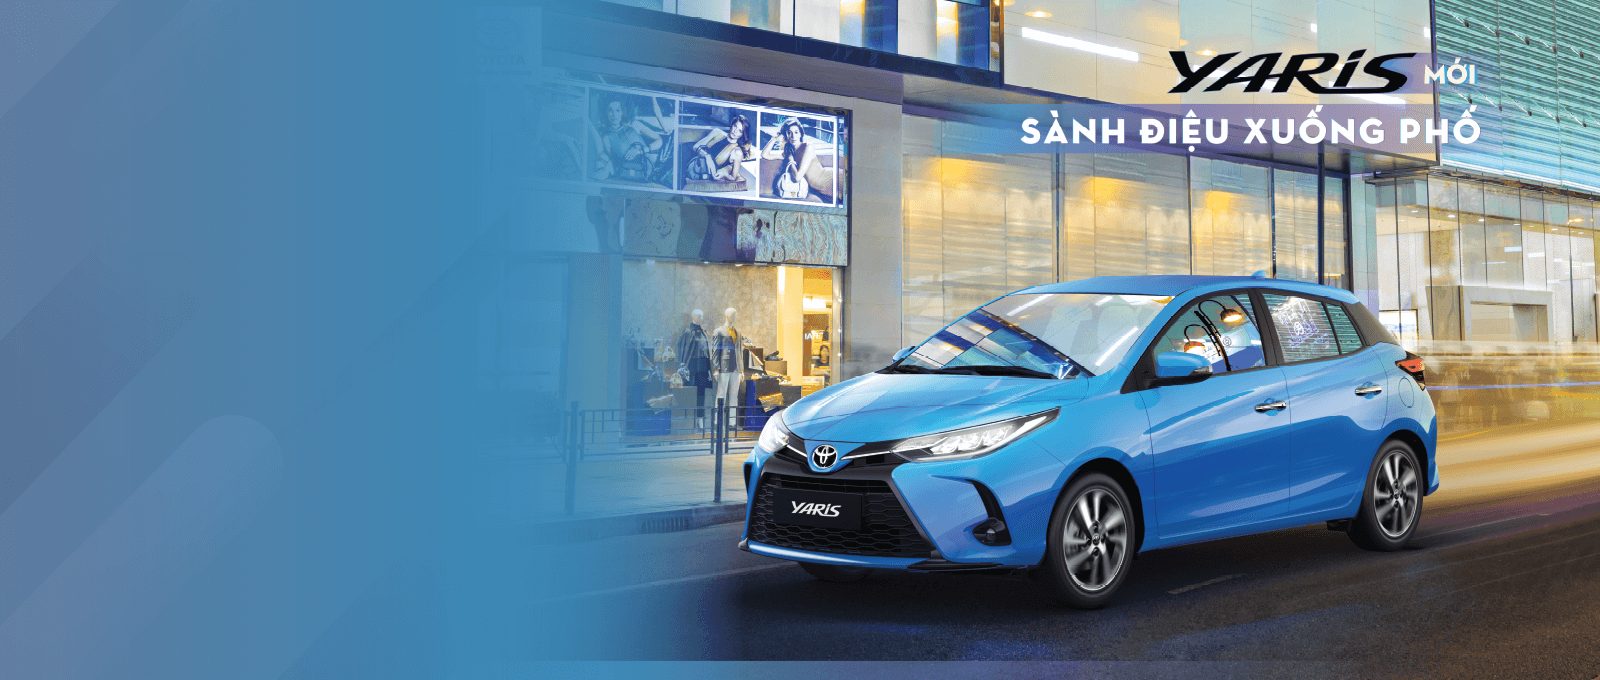 Xem chi tiết bảng giá xe Toyota Yaris và Chương trình khuyến mãi: